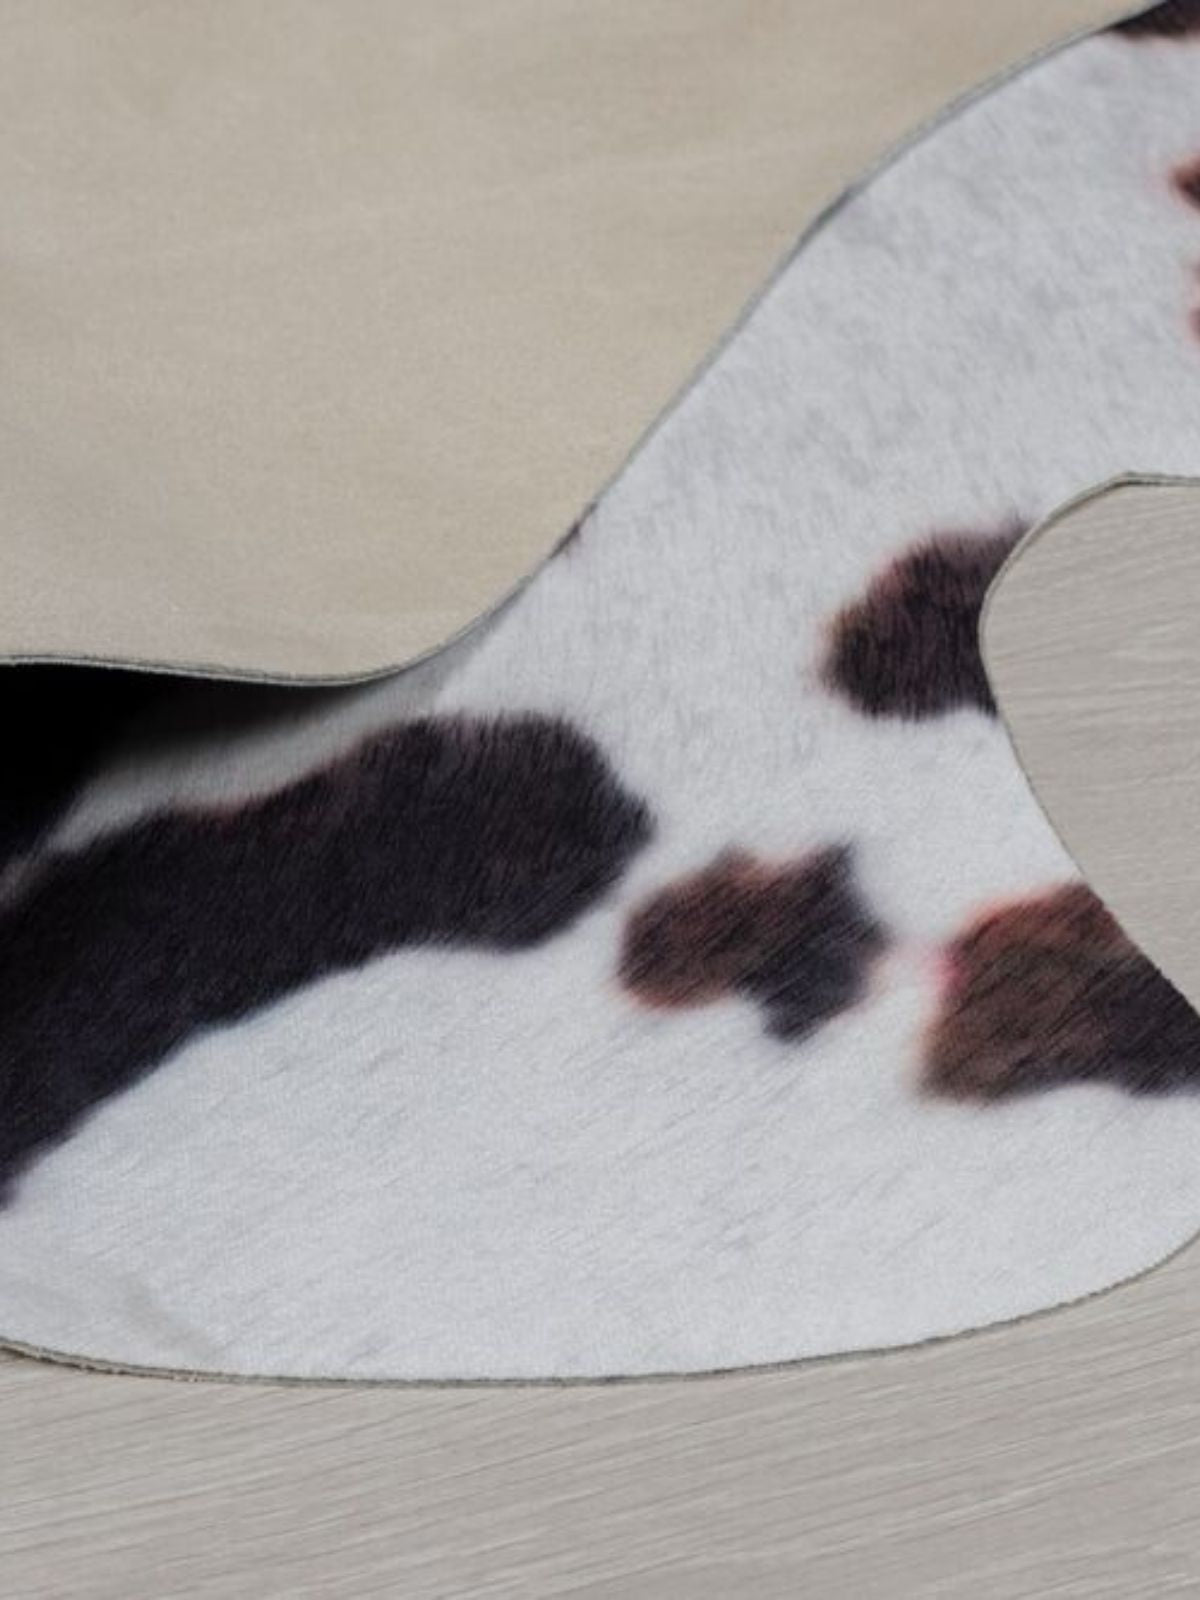 Tappeto animale Cow Print in poliestere, colore bianco e nero 155x195 cm.-3